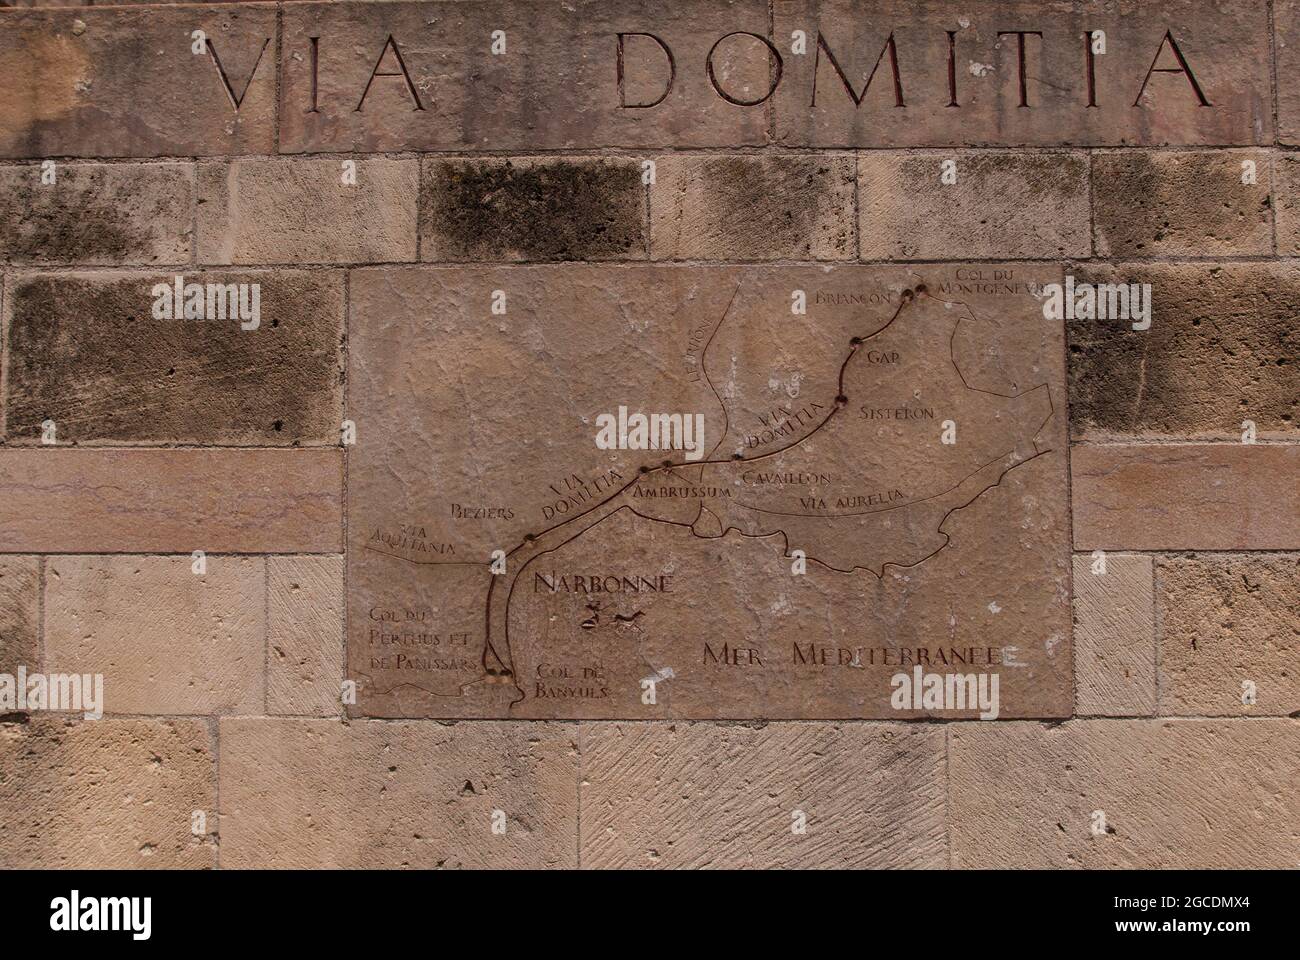 Terrain historique: Une carte de la via Domitia romaine sur la place principale de Narbonne dans le sud de la France Banque D'Images